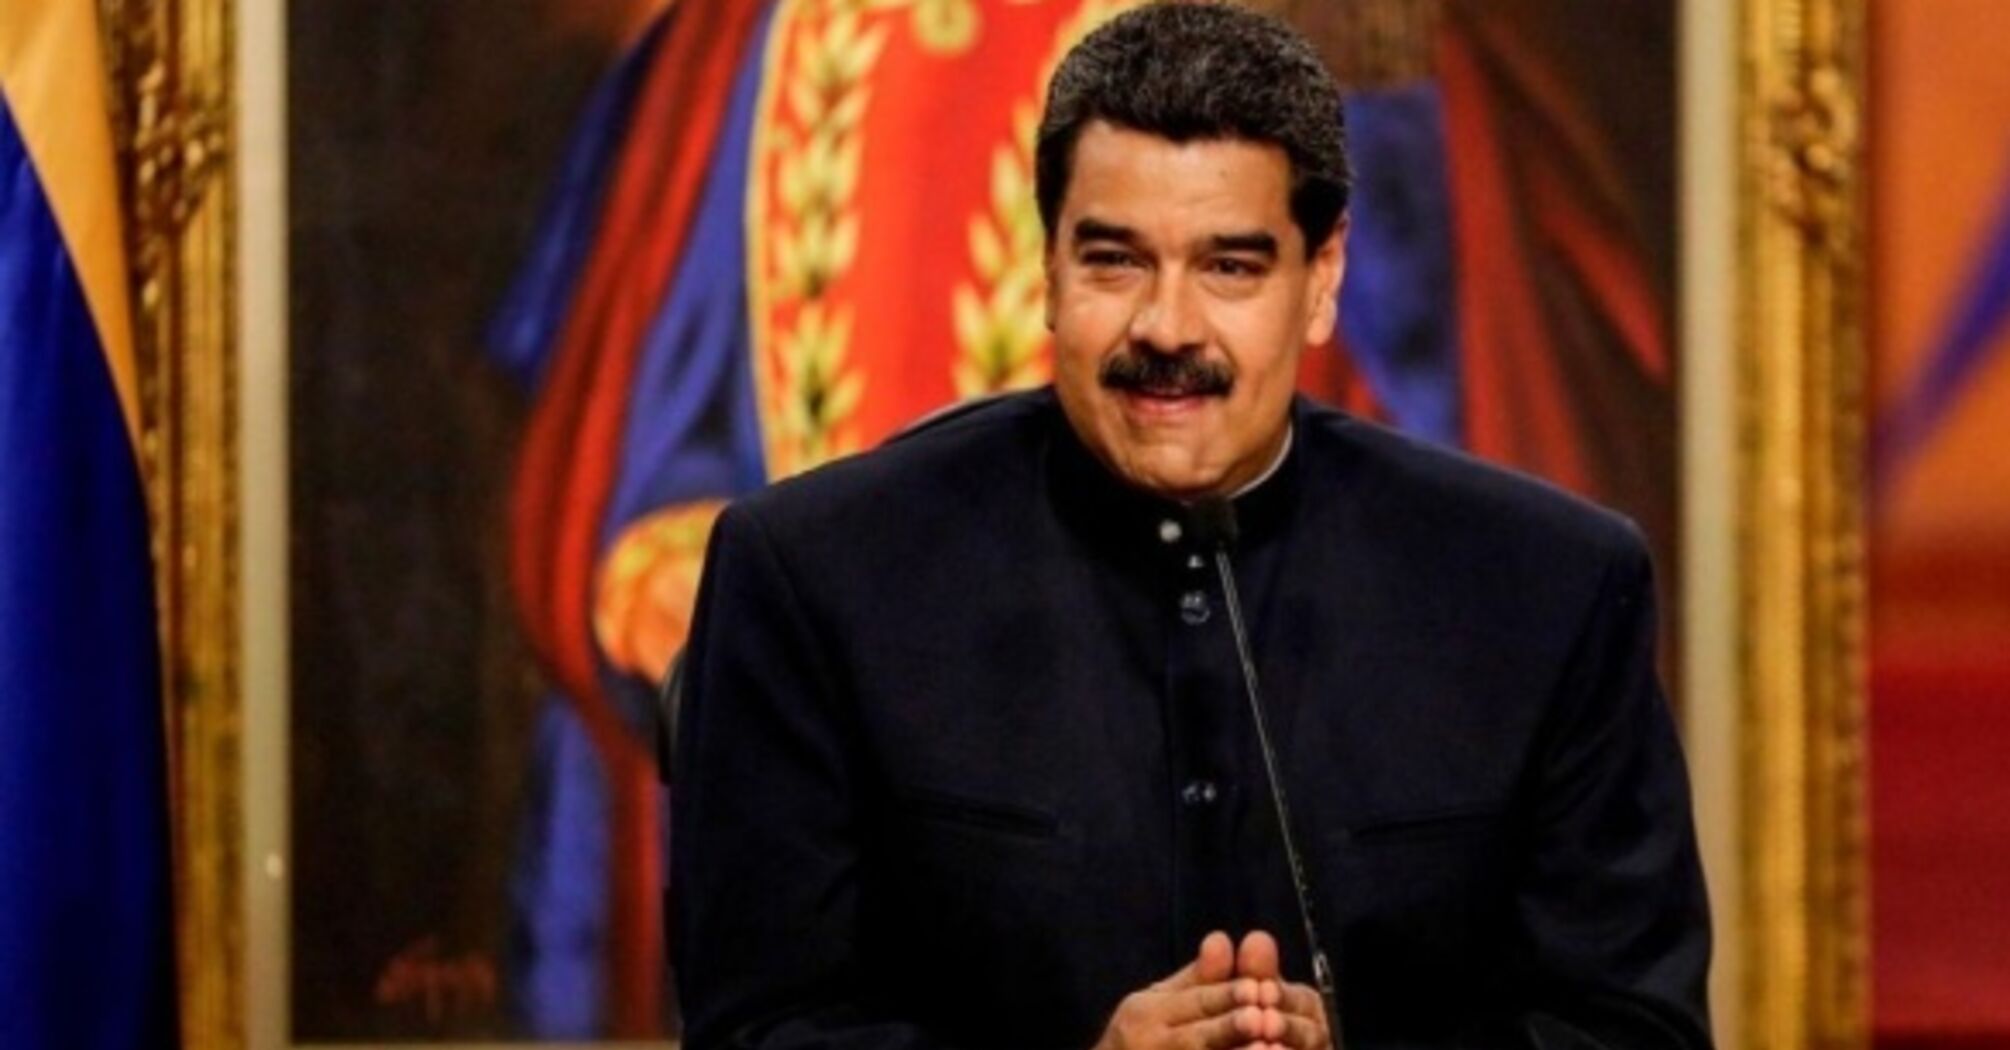 Выборы в Венесуэле 28 июля как испытание для Москвы и Лукашенко